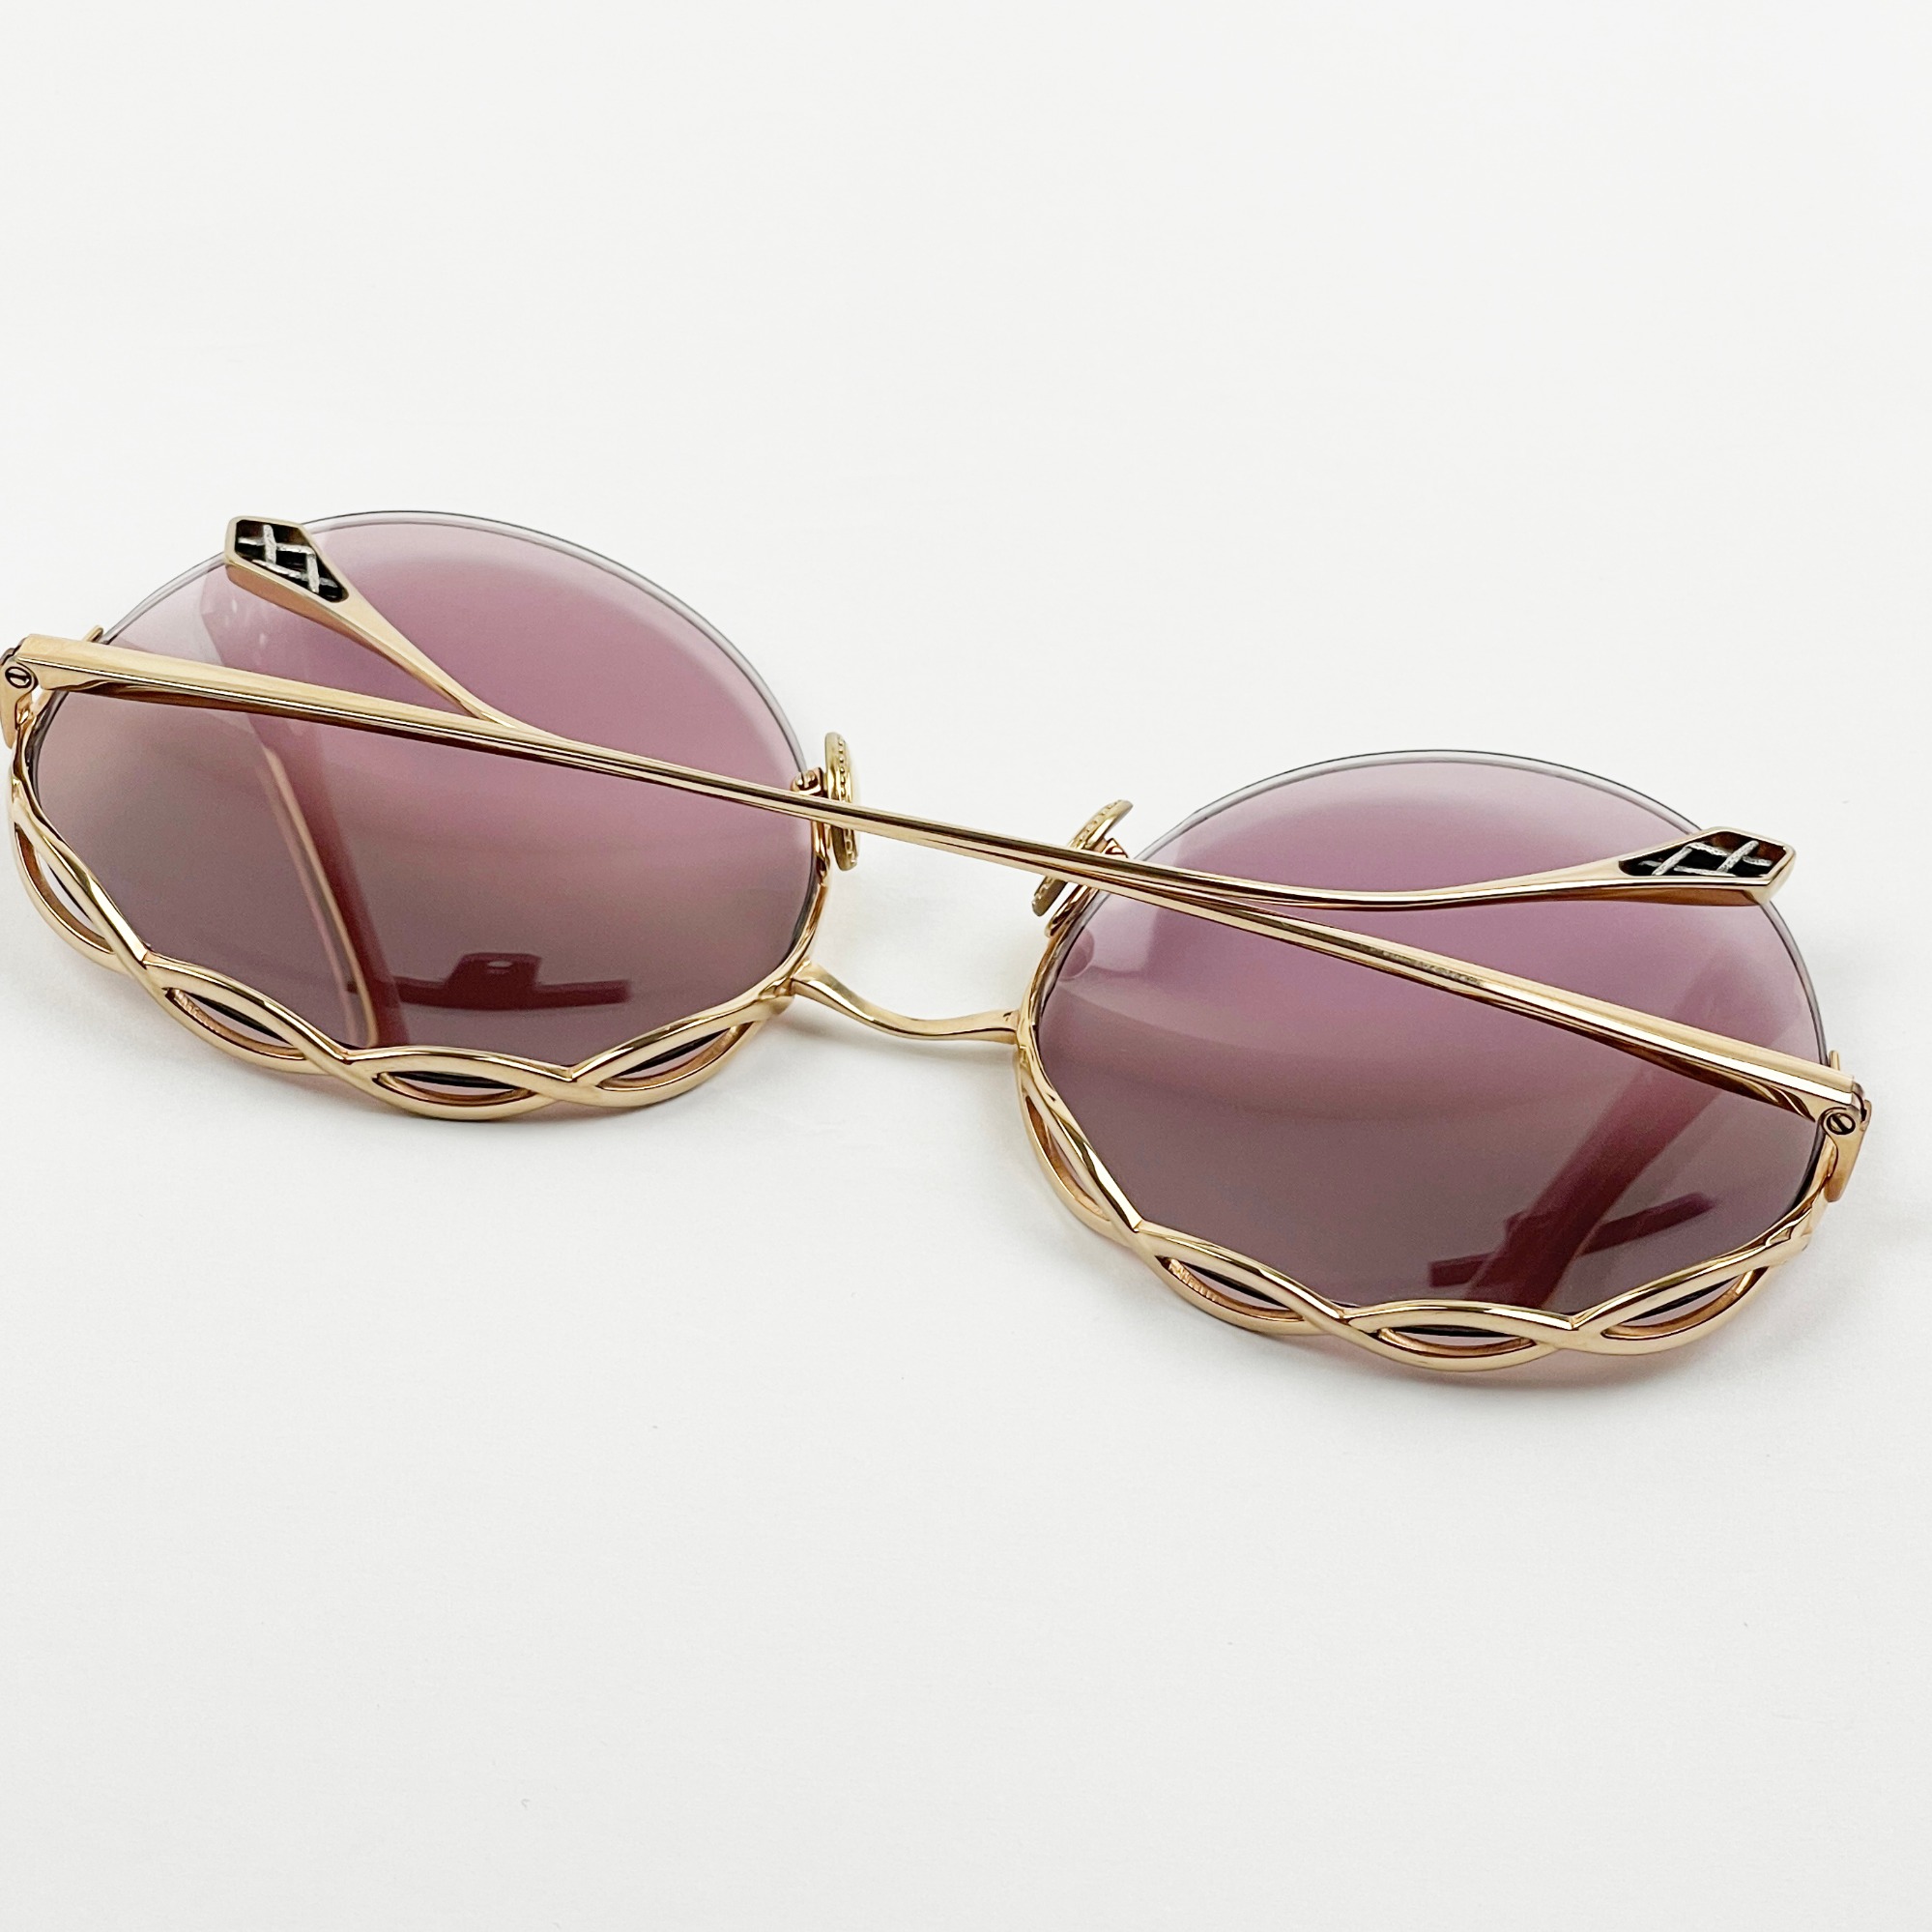 New fashion sunglasses round frames Sunglasses